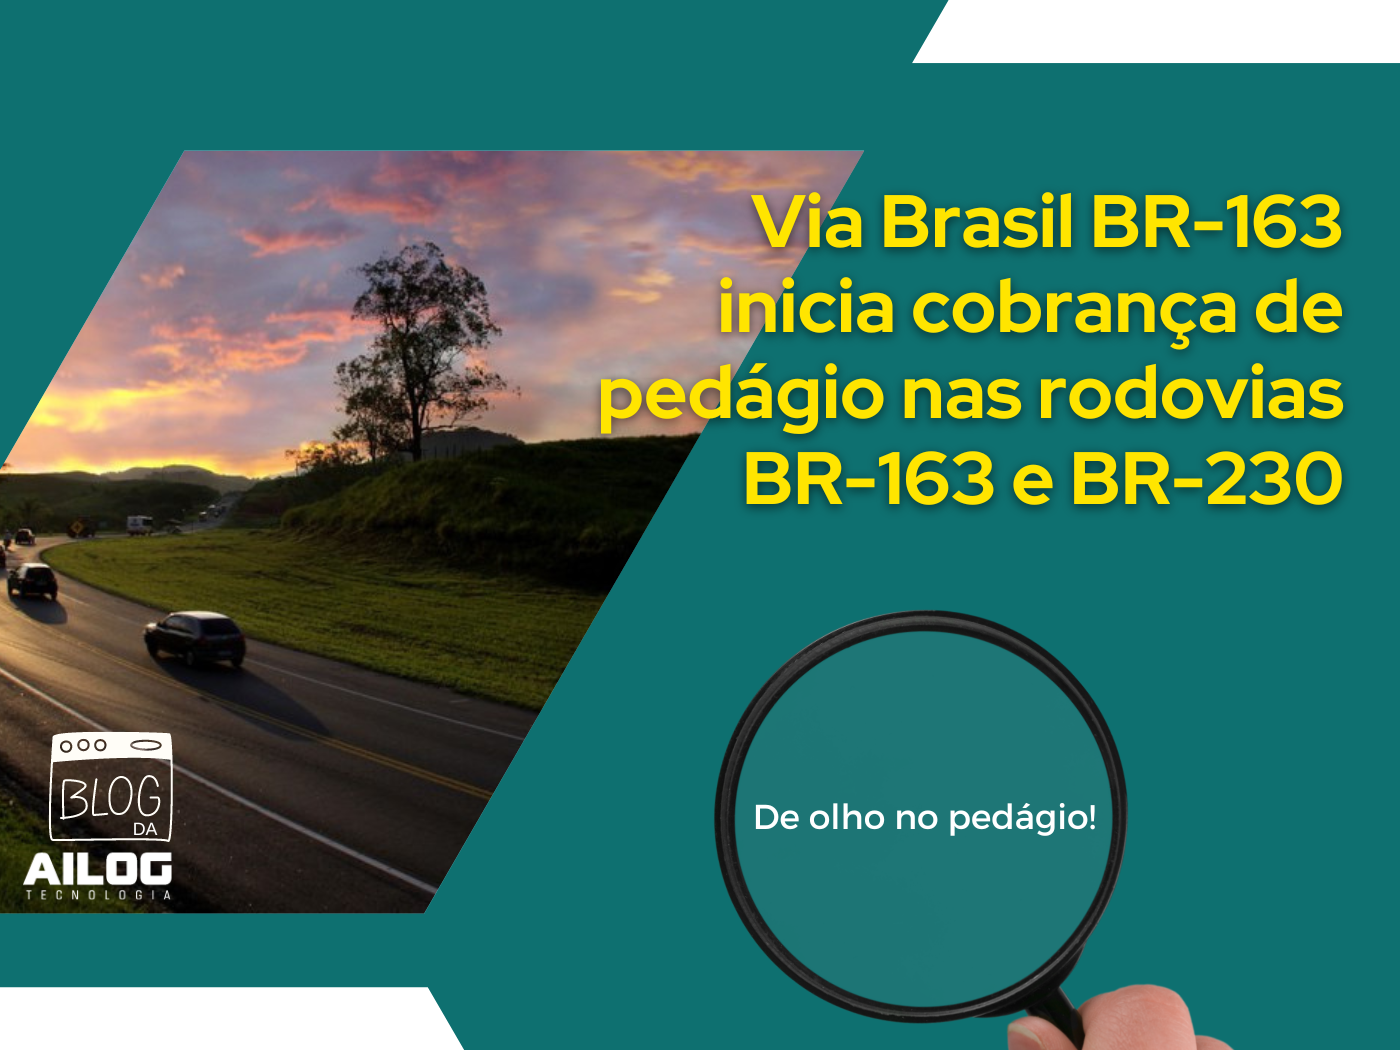 A Via Brasil BR-163, concessionária responsável pela gestão das rodovias BR-163 e BR-230 entre Sinop (MT) e Miritituba (PA), a iniciar, às 0h de 13 de fevereiro, a cobrança de pedágio nas praças de pedágio localizadas em Cláudia (MT) e Guarantã do Norte (MT).